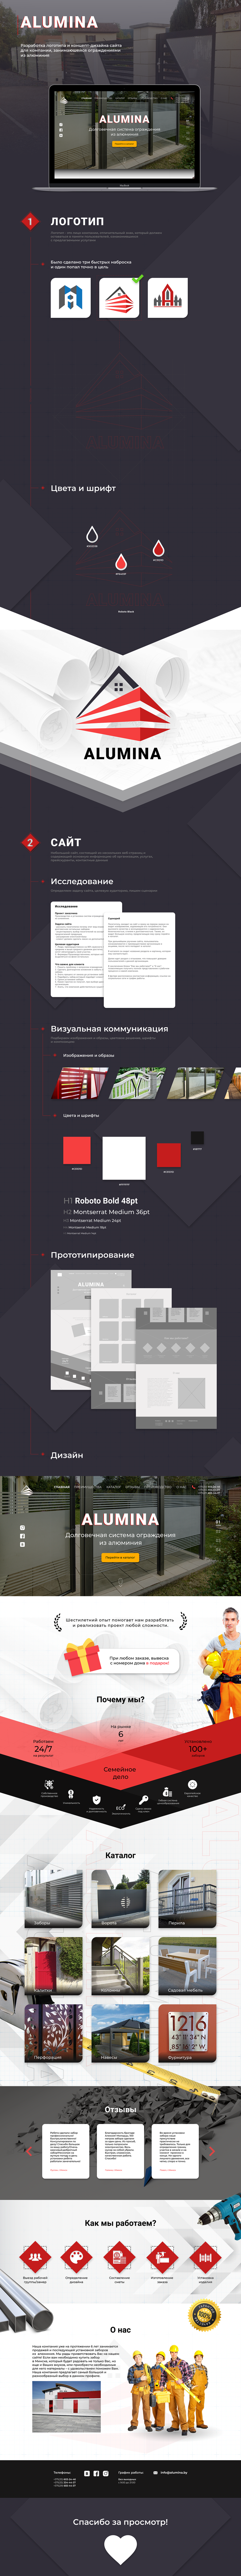 web-design Figma design ux/ui design art Adobe Photoshop